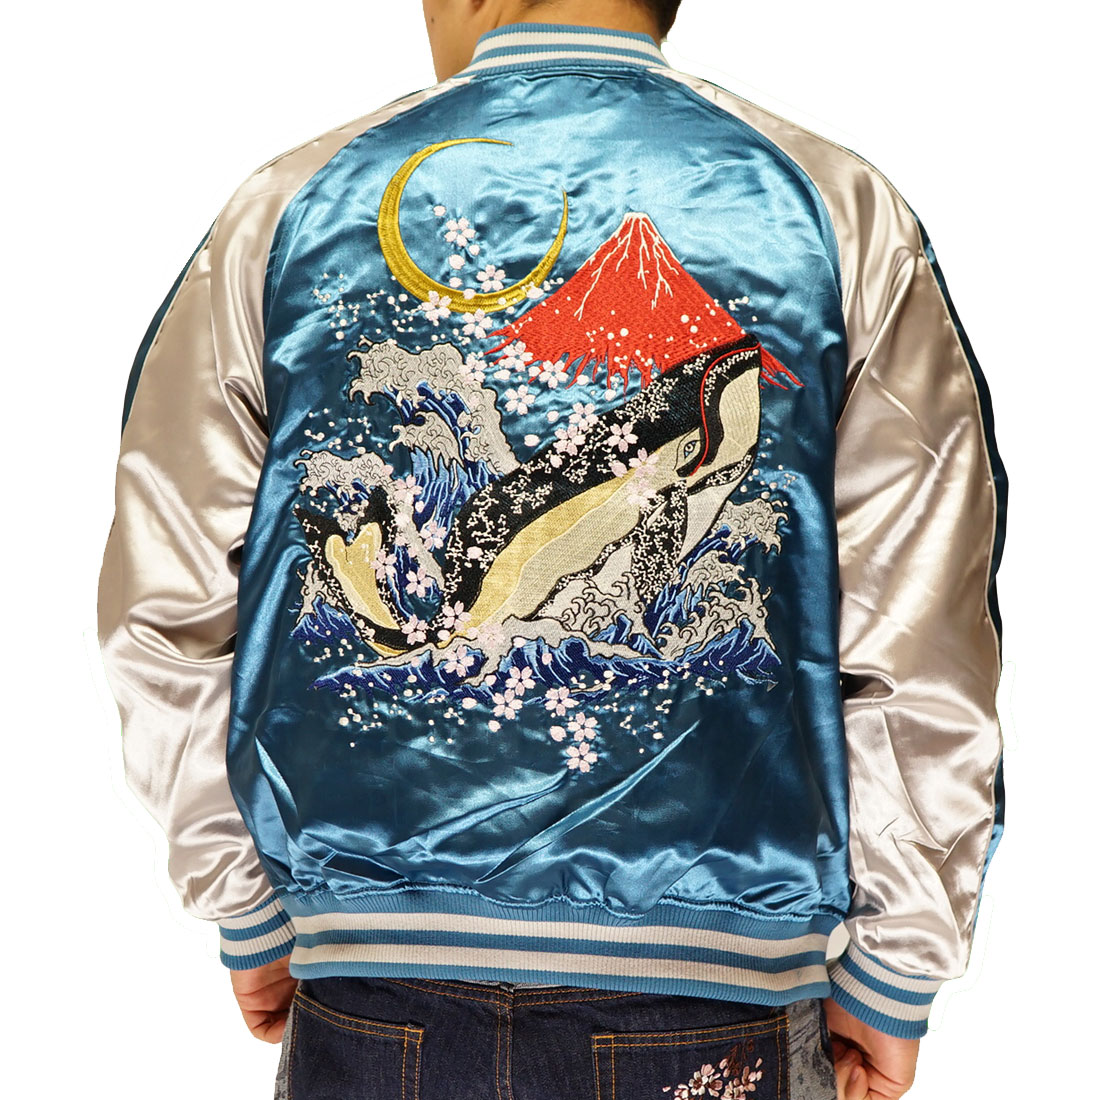 朧 おぼろ 和柄 スカジャン メンズ 華鳥風月 鯨 くじら 海 富士山 日本 総刺繍 9001815 送料無料